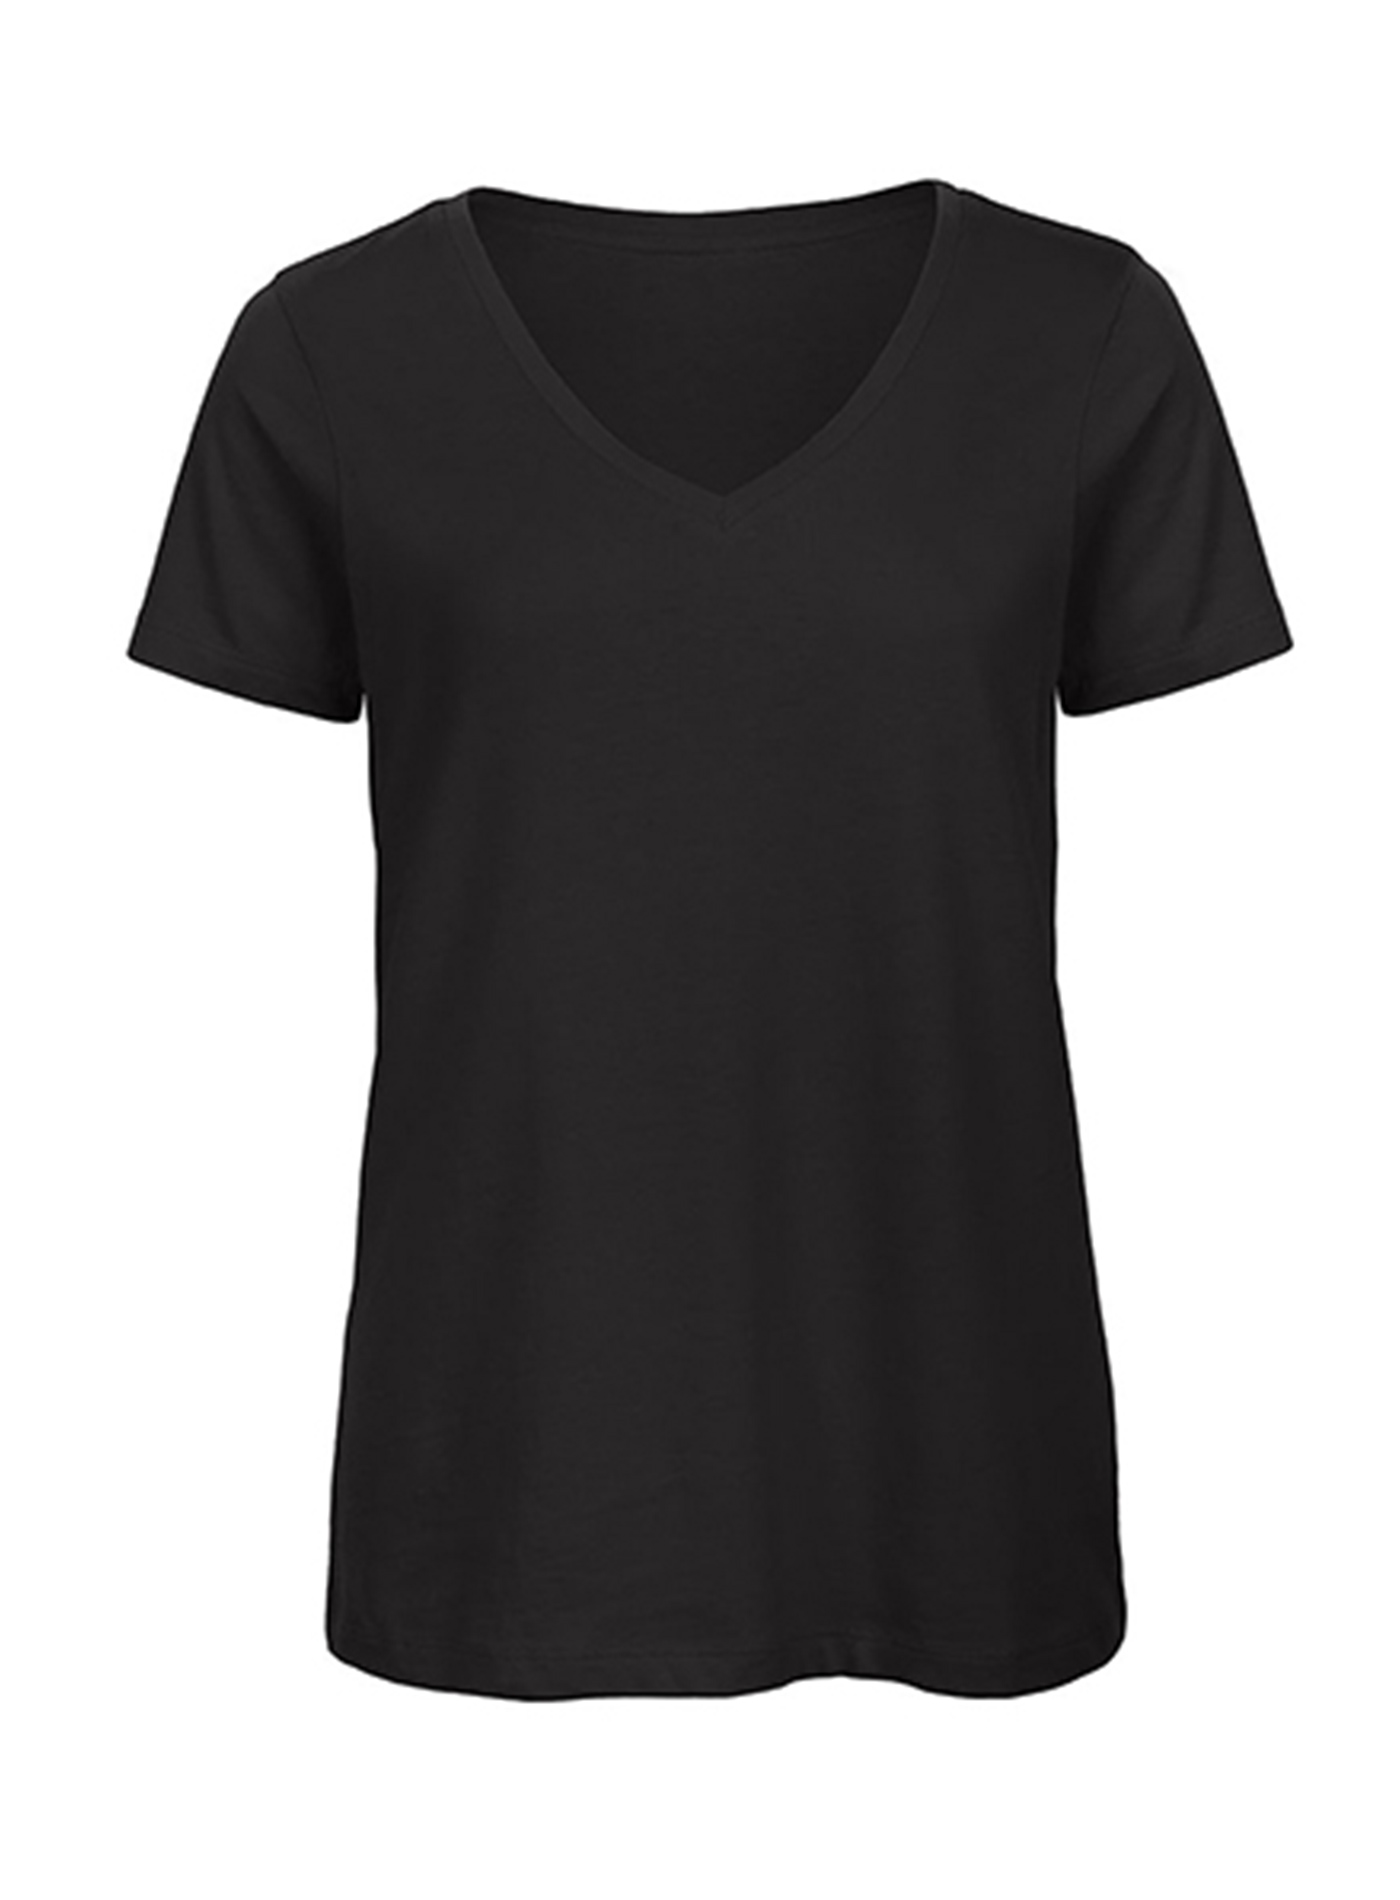 Dámské tričko s výstřihem do V B&C Collection Inspire - černá L